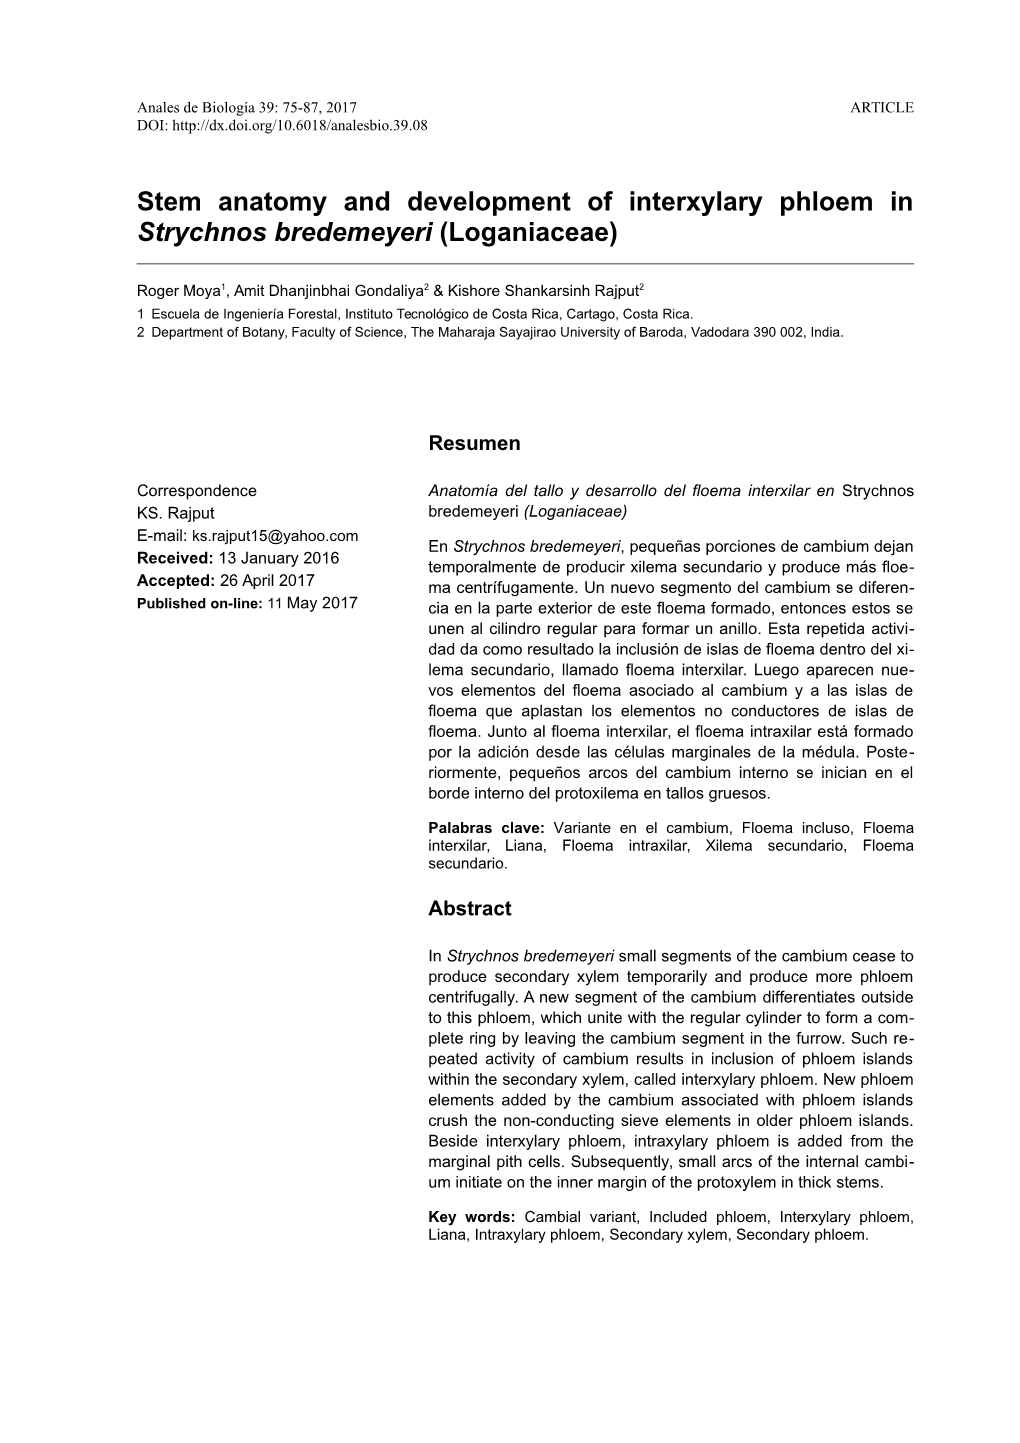 Stem Anatomy and Development of Interxylary Phloem in Strychnos Bredemeyeri (Loganiaceae)